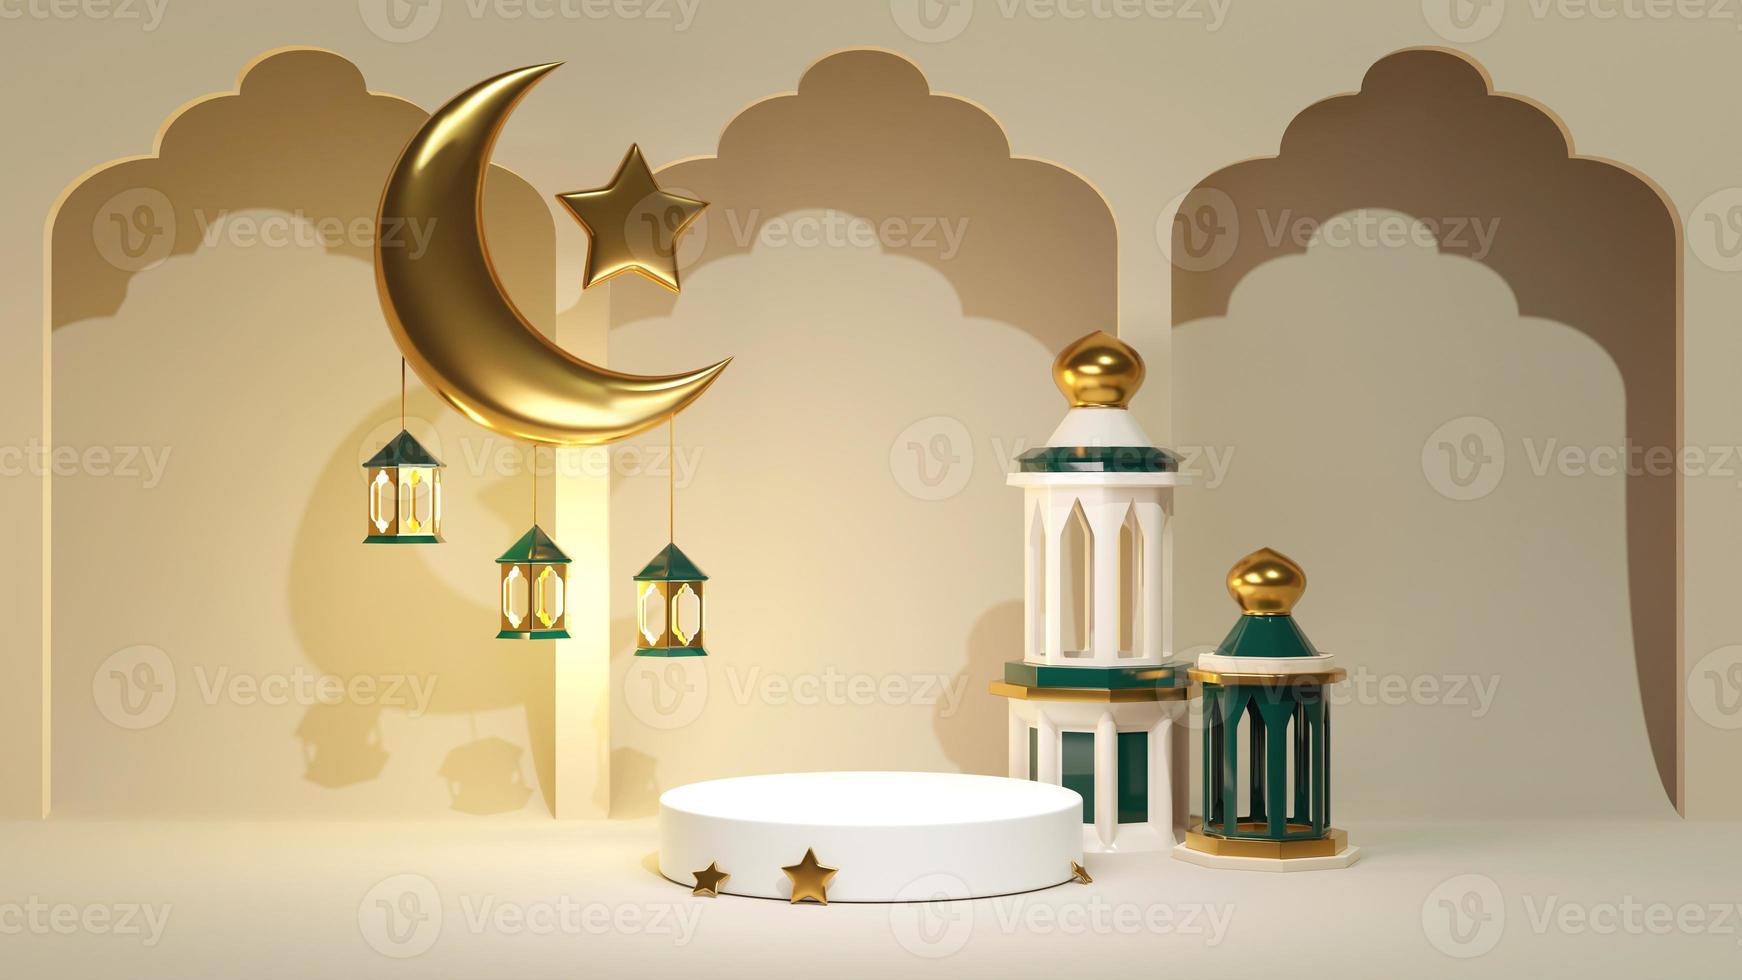 3d render ramadan kareem feier hintergrund für werbebanner. Schmuckständer mit islamischem goldenem Halbmond und Stern mit Bogen. arabische dekoration und moschee in der nähe des produktausstellungssockels foto